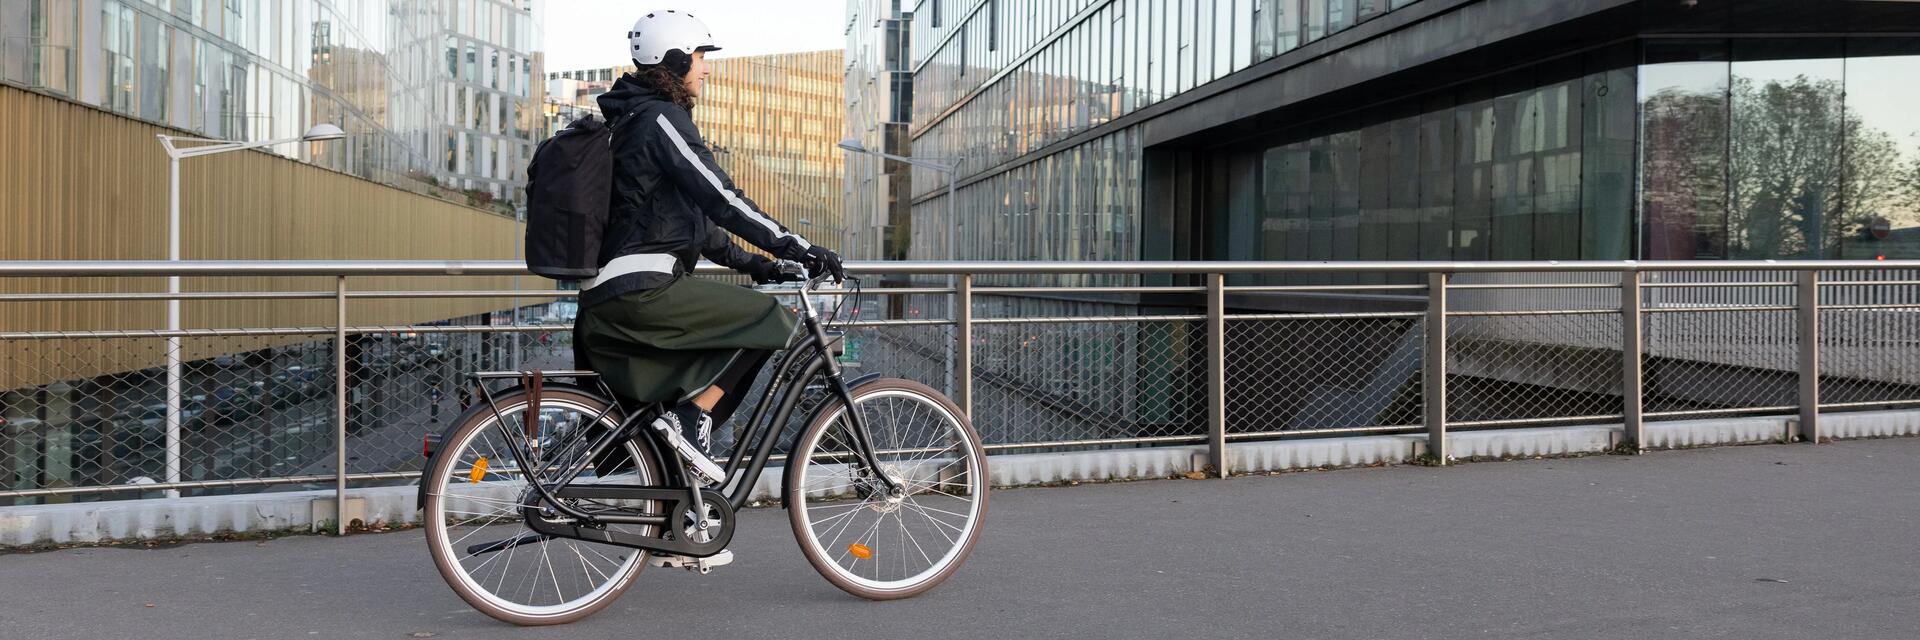 ¿Es obligatorio llevar casco en bicicleta?